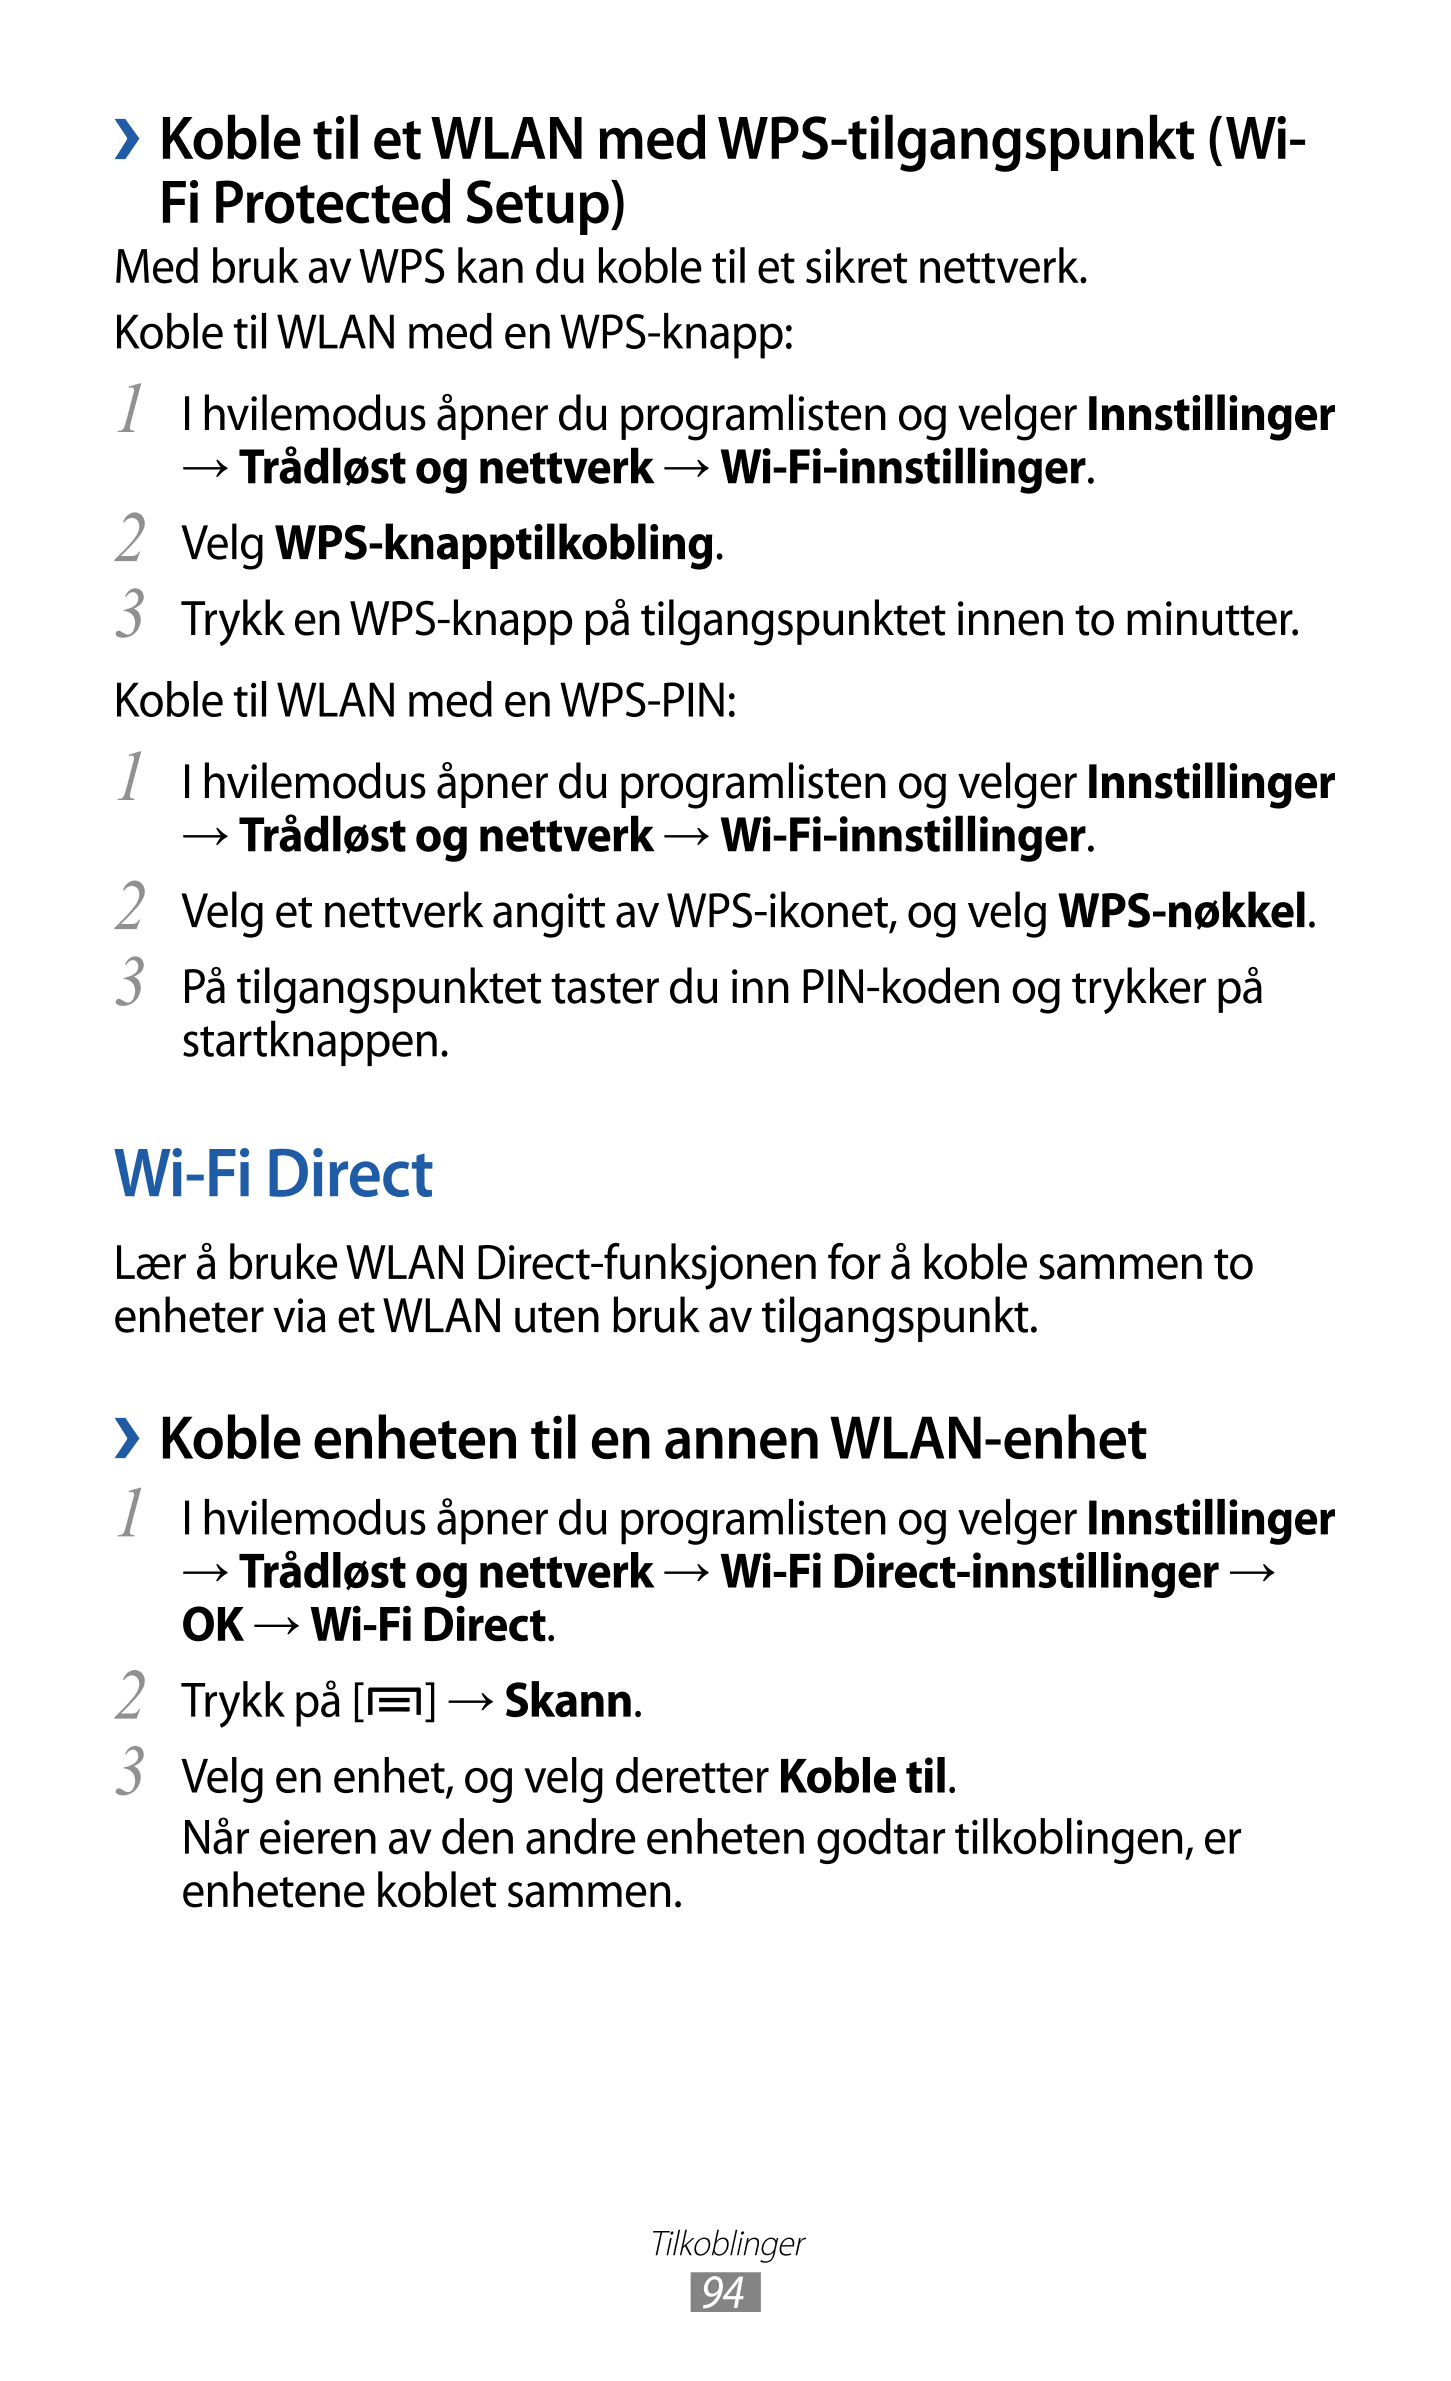   Koble til et WLAN med WPS-tilgangspunkt (Wi-
Fi Protected Setup)
Med bruk av WPS kan du koble til et sikret nettverk.
Koble ti